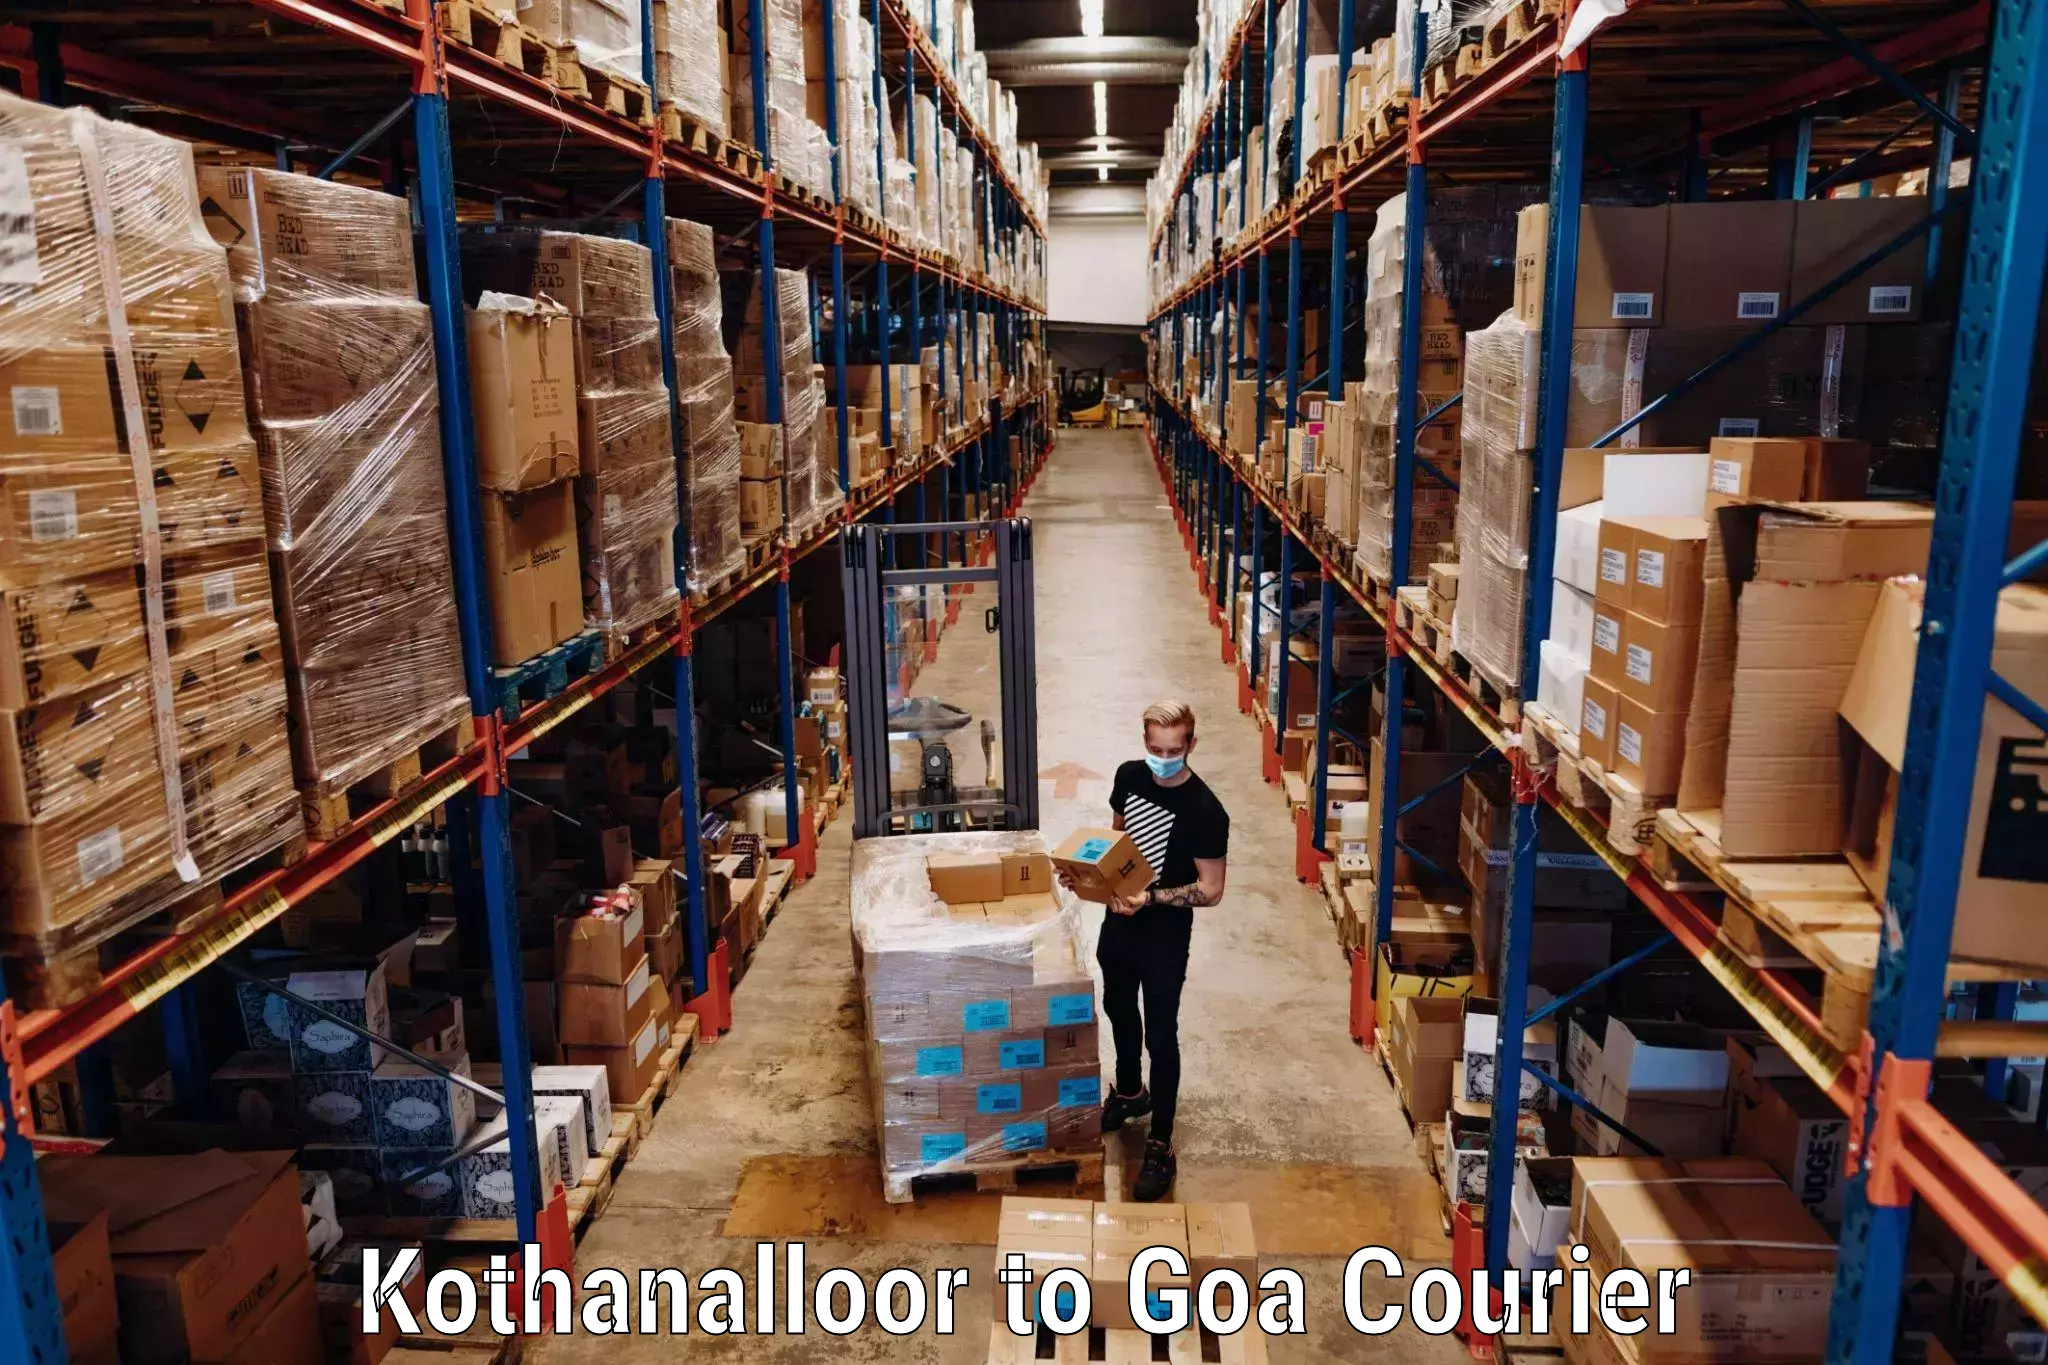 Automated luggage transport Kothanalloor to Goa